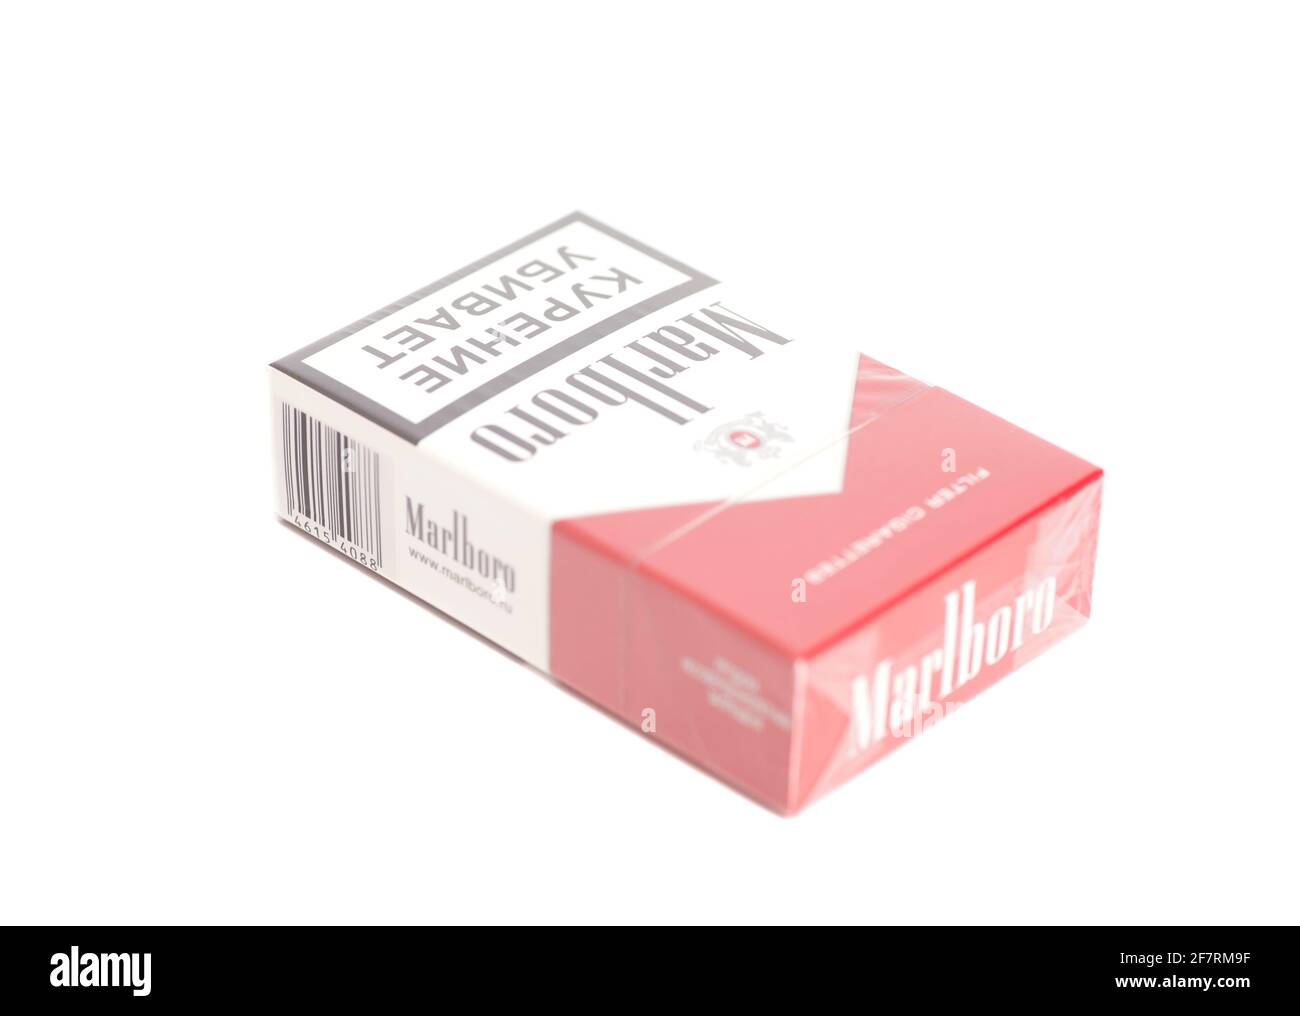 Cigarette cartons Banque d'images détourées - Alamy